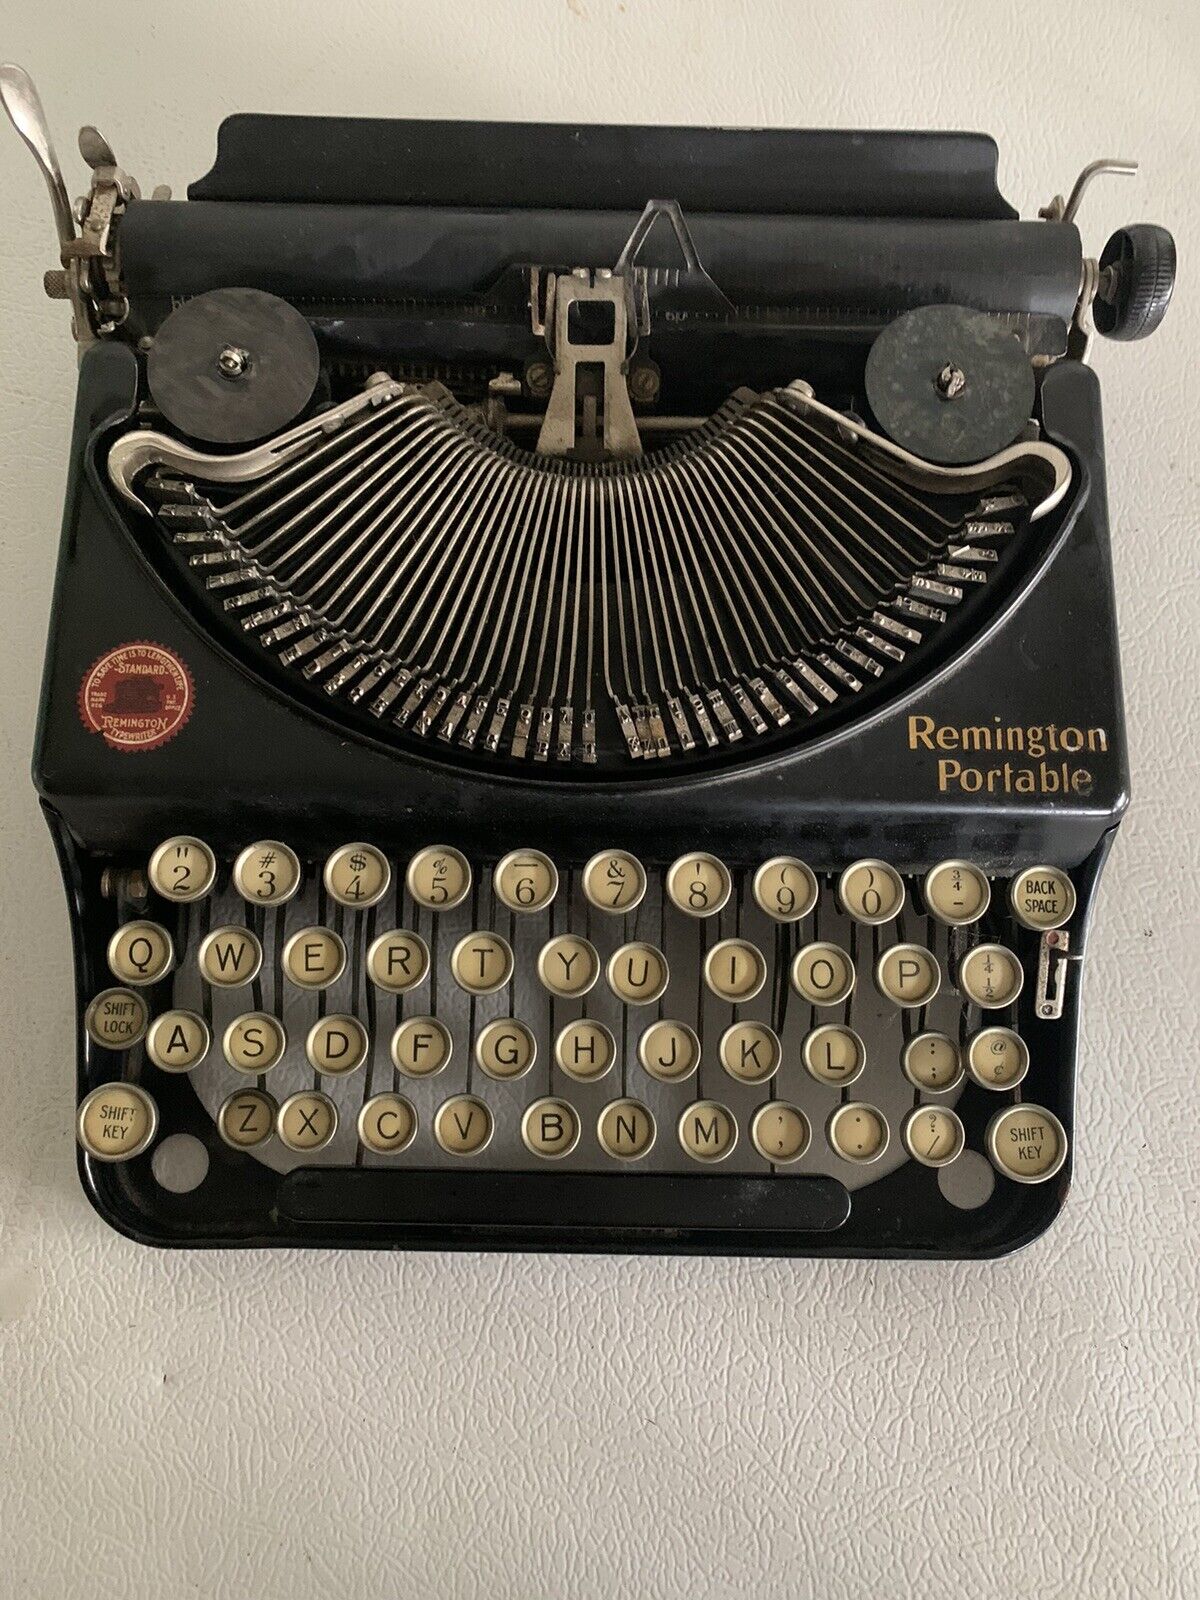 Vintage remington portable typewriter